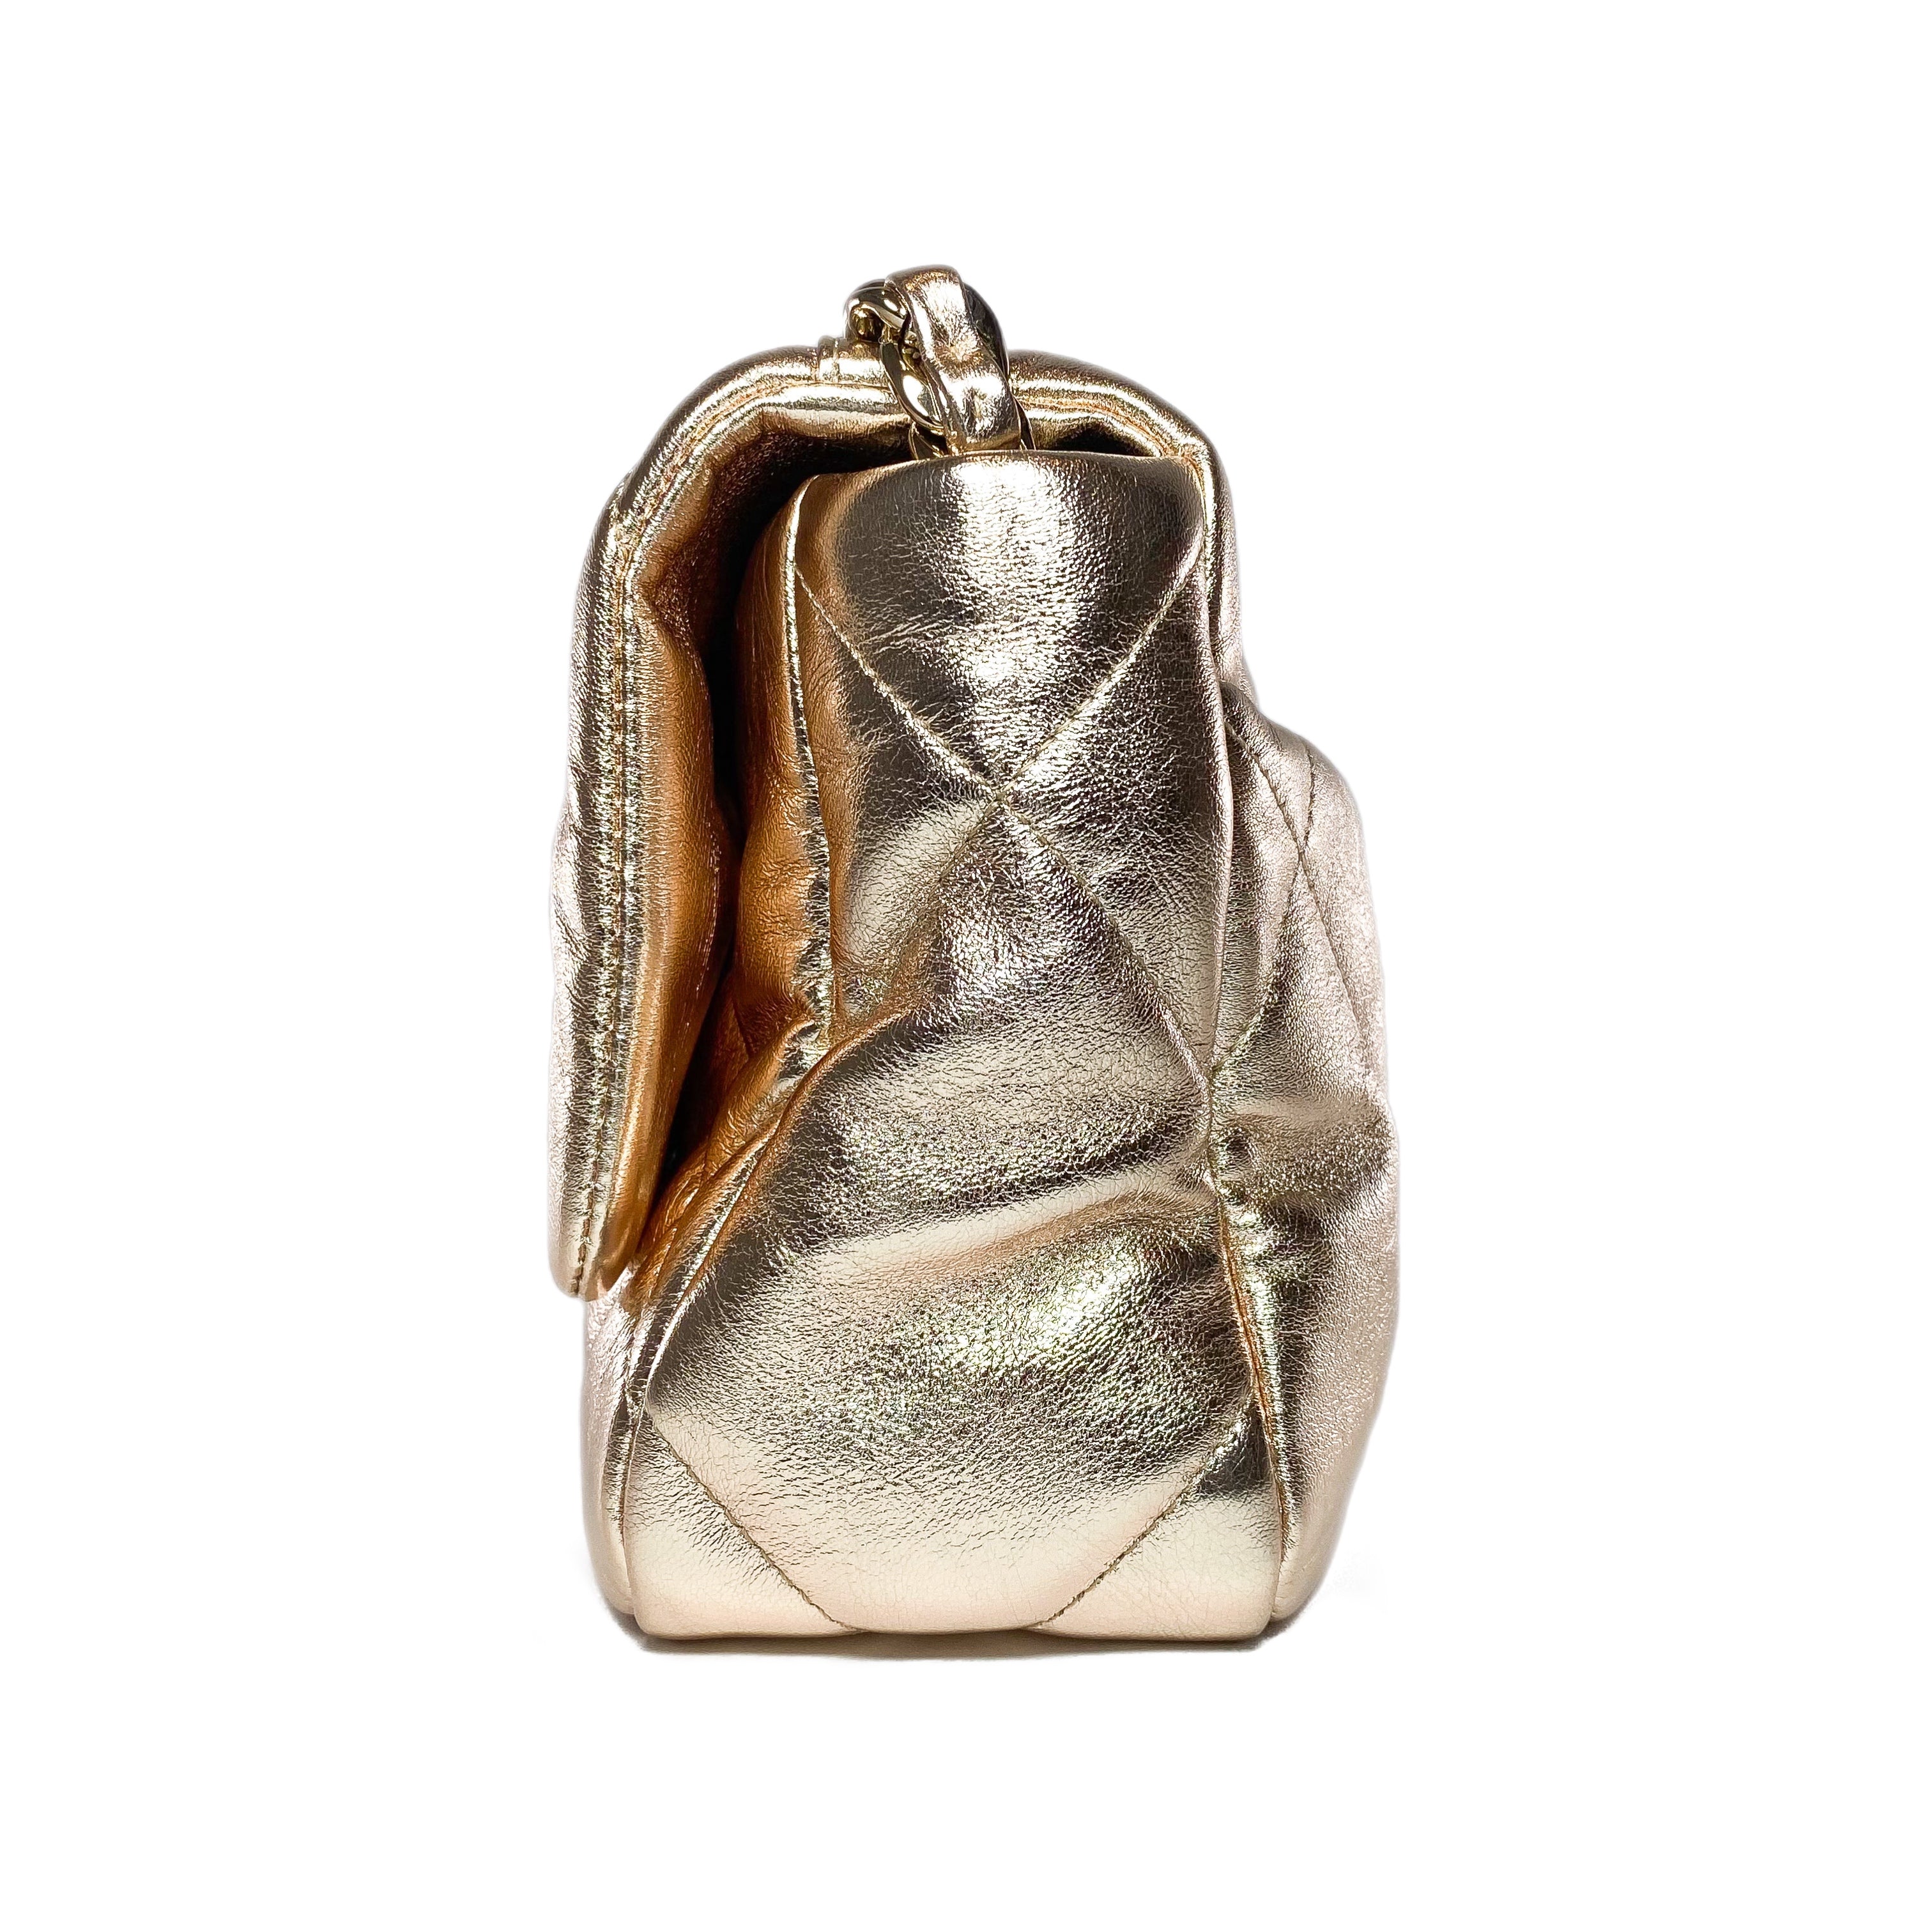 Chanel 19 Medium Metallic Rose Gold Flap Bag